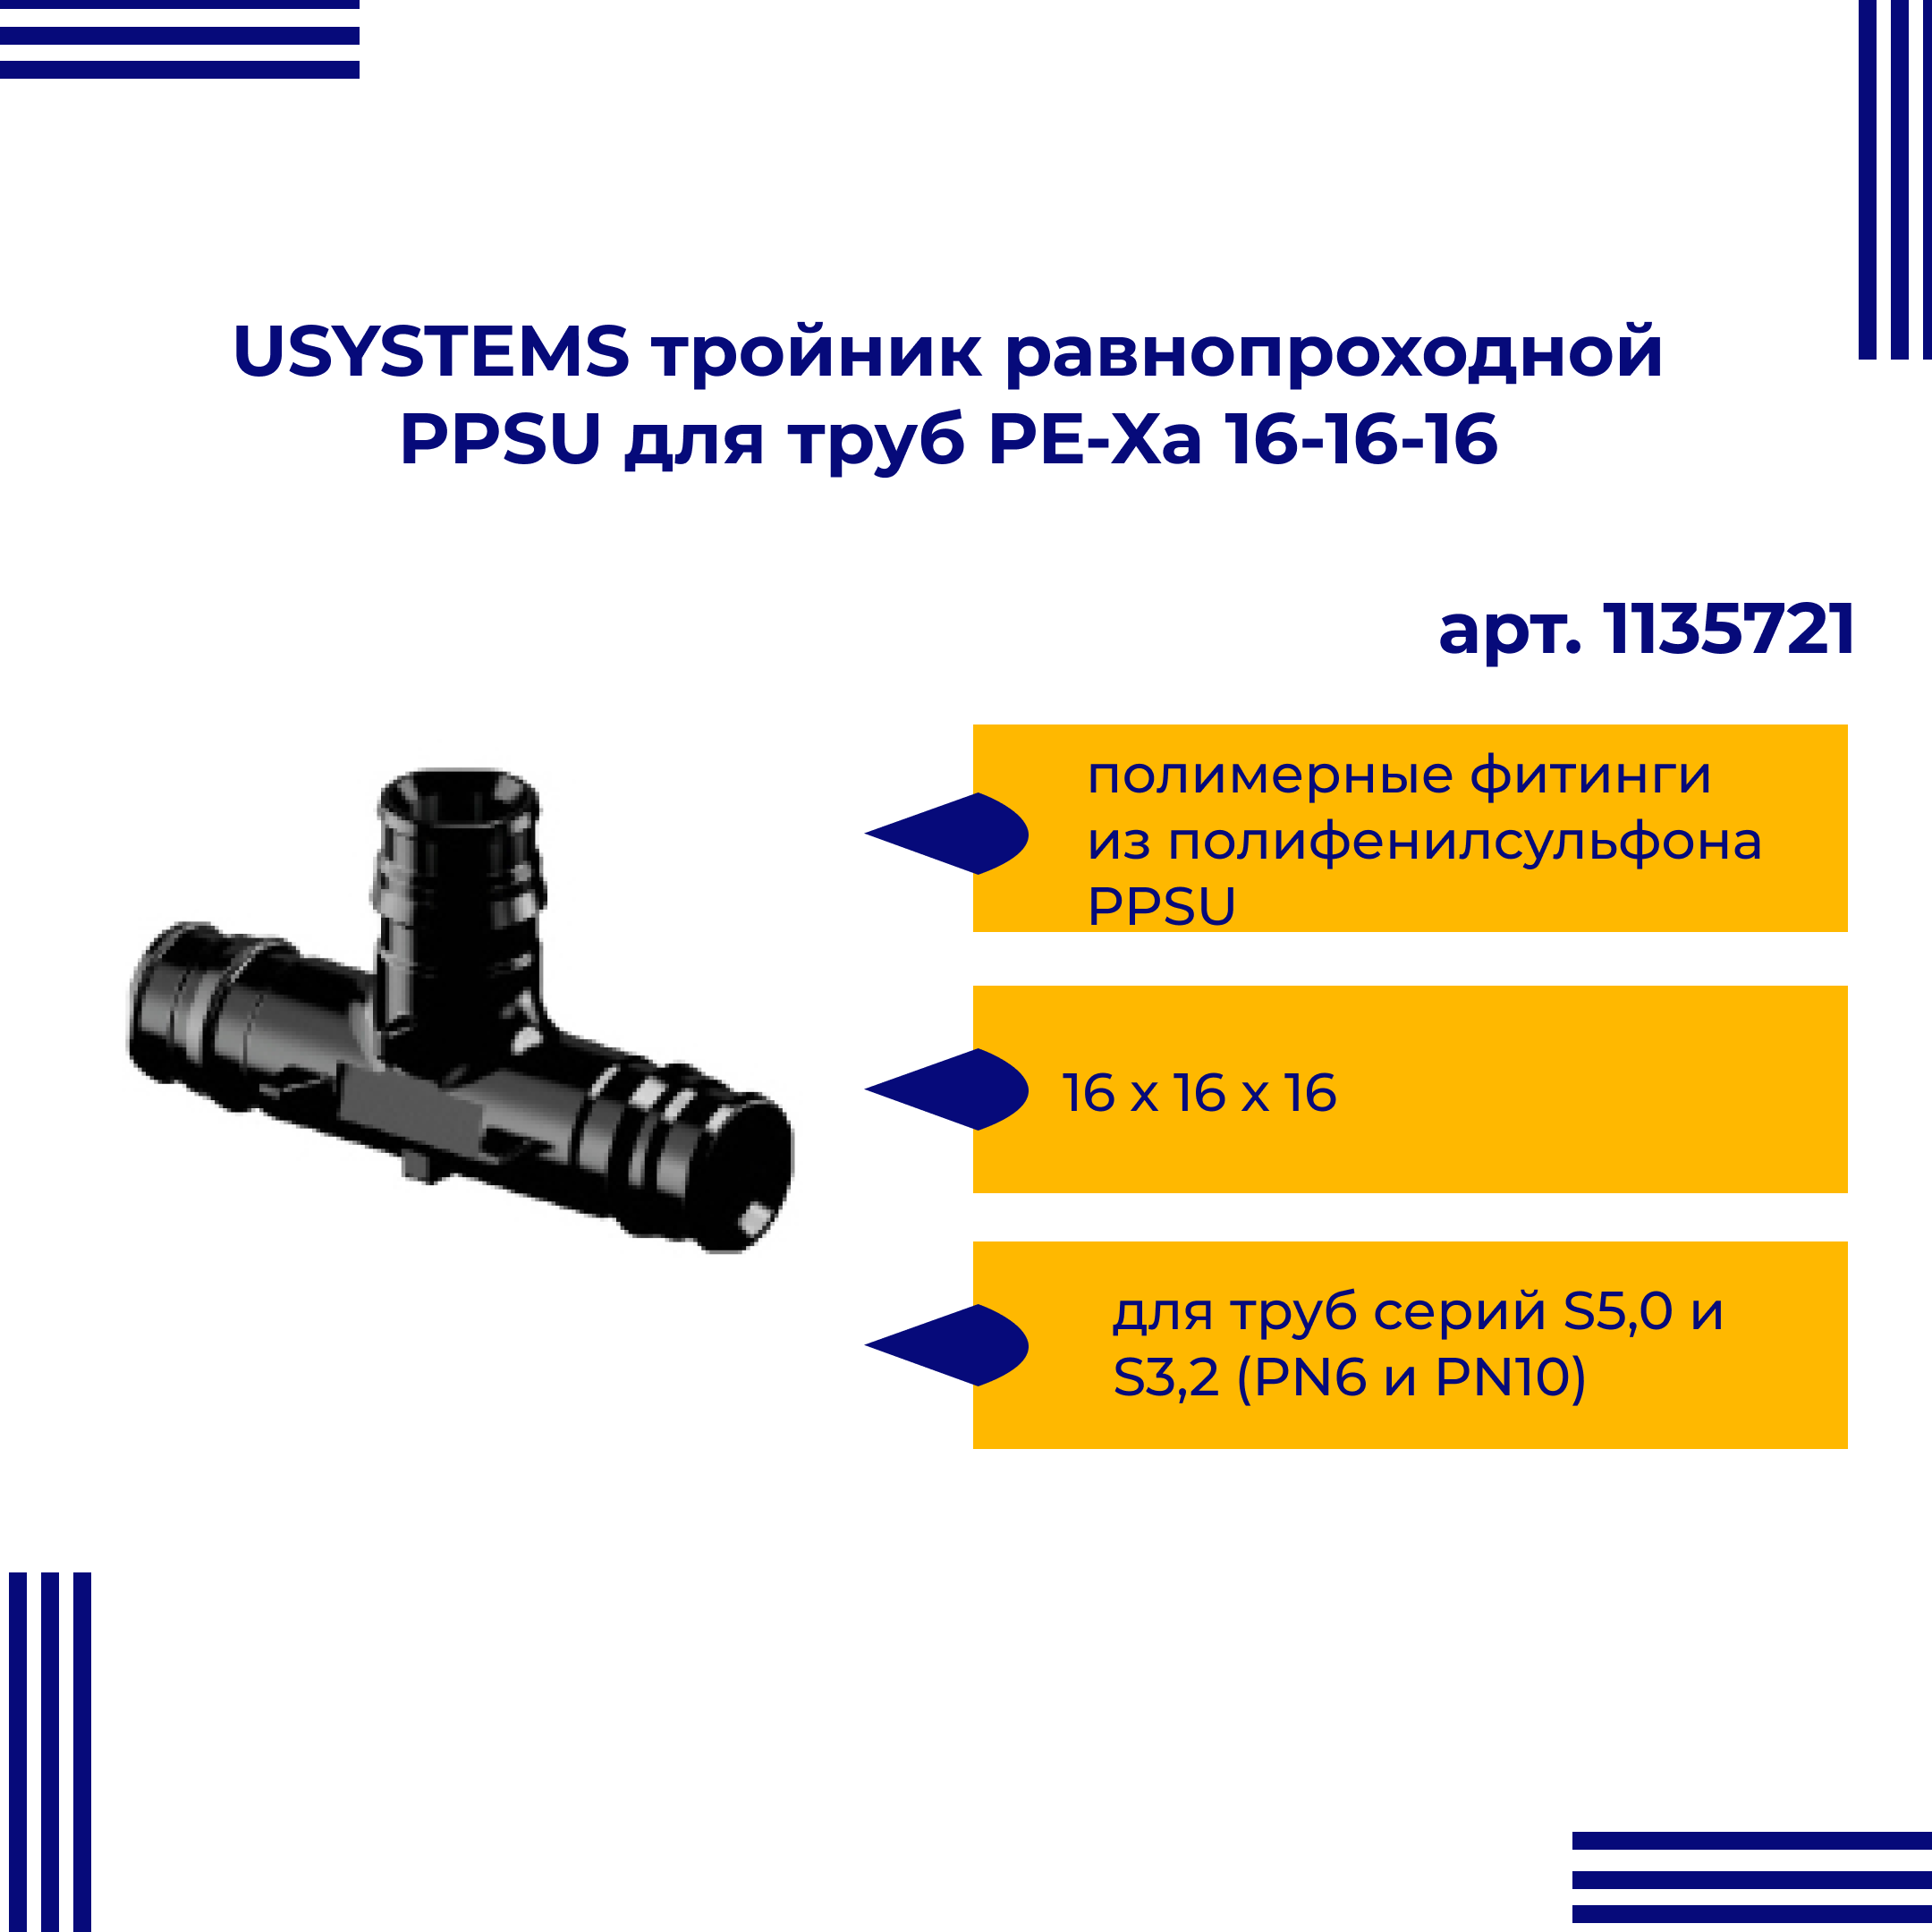 Тройник PPSU USYSTEMS равнопроходной для труб PE-Xa 16-16-16 1135721 двойная водорозетка для труб из сшитого полиэтилена pex qe one plus